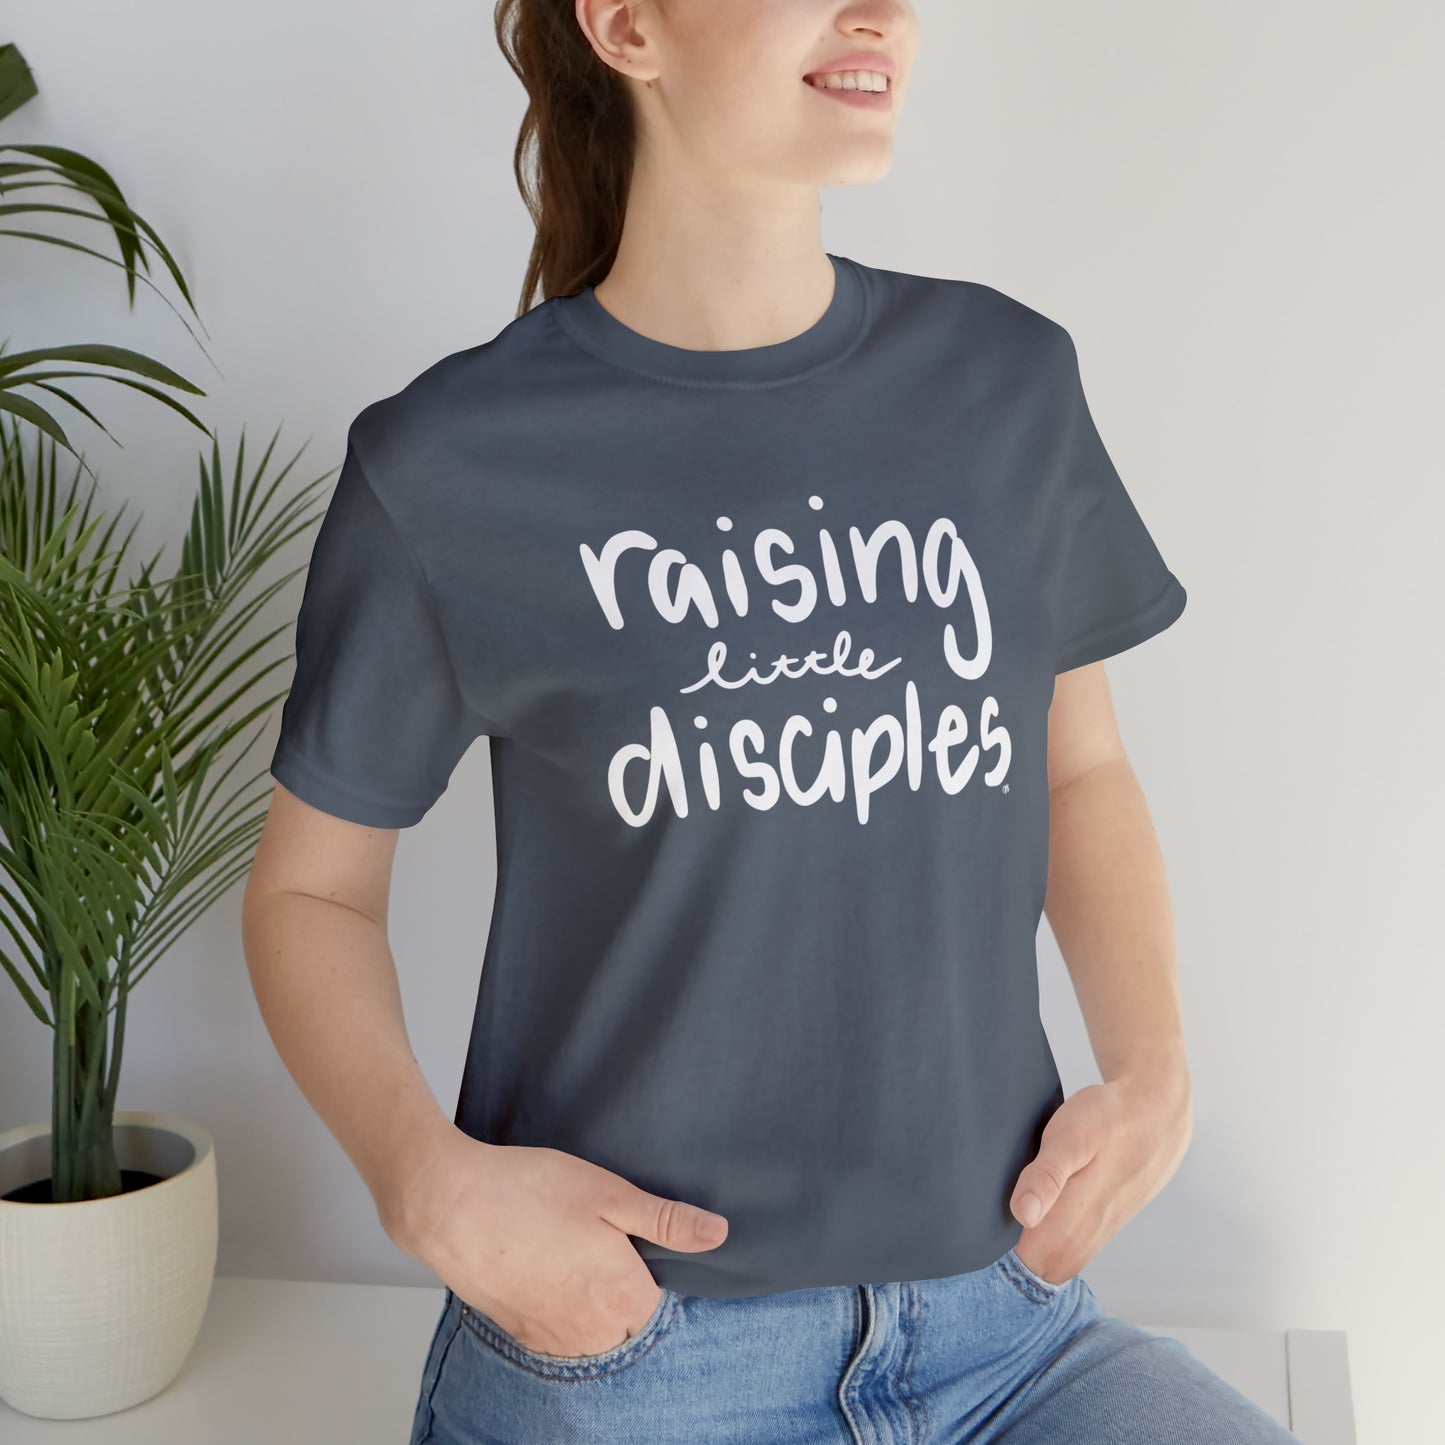 Raising little disciples T-shirt